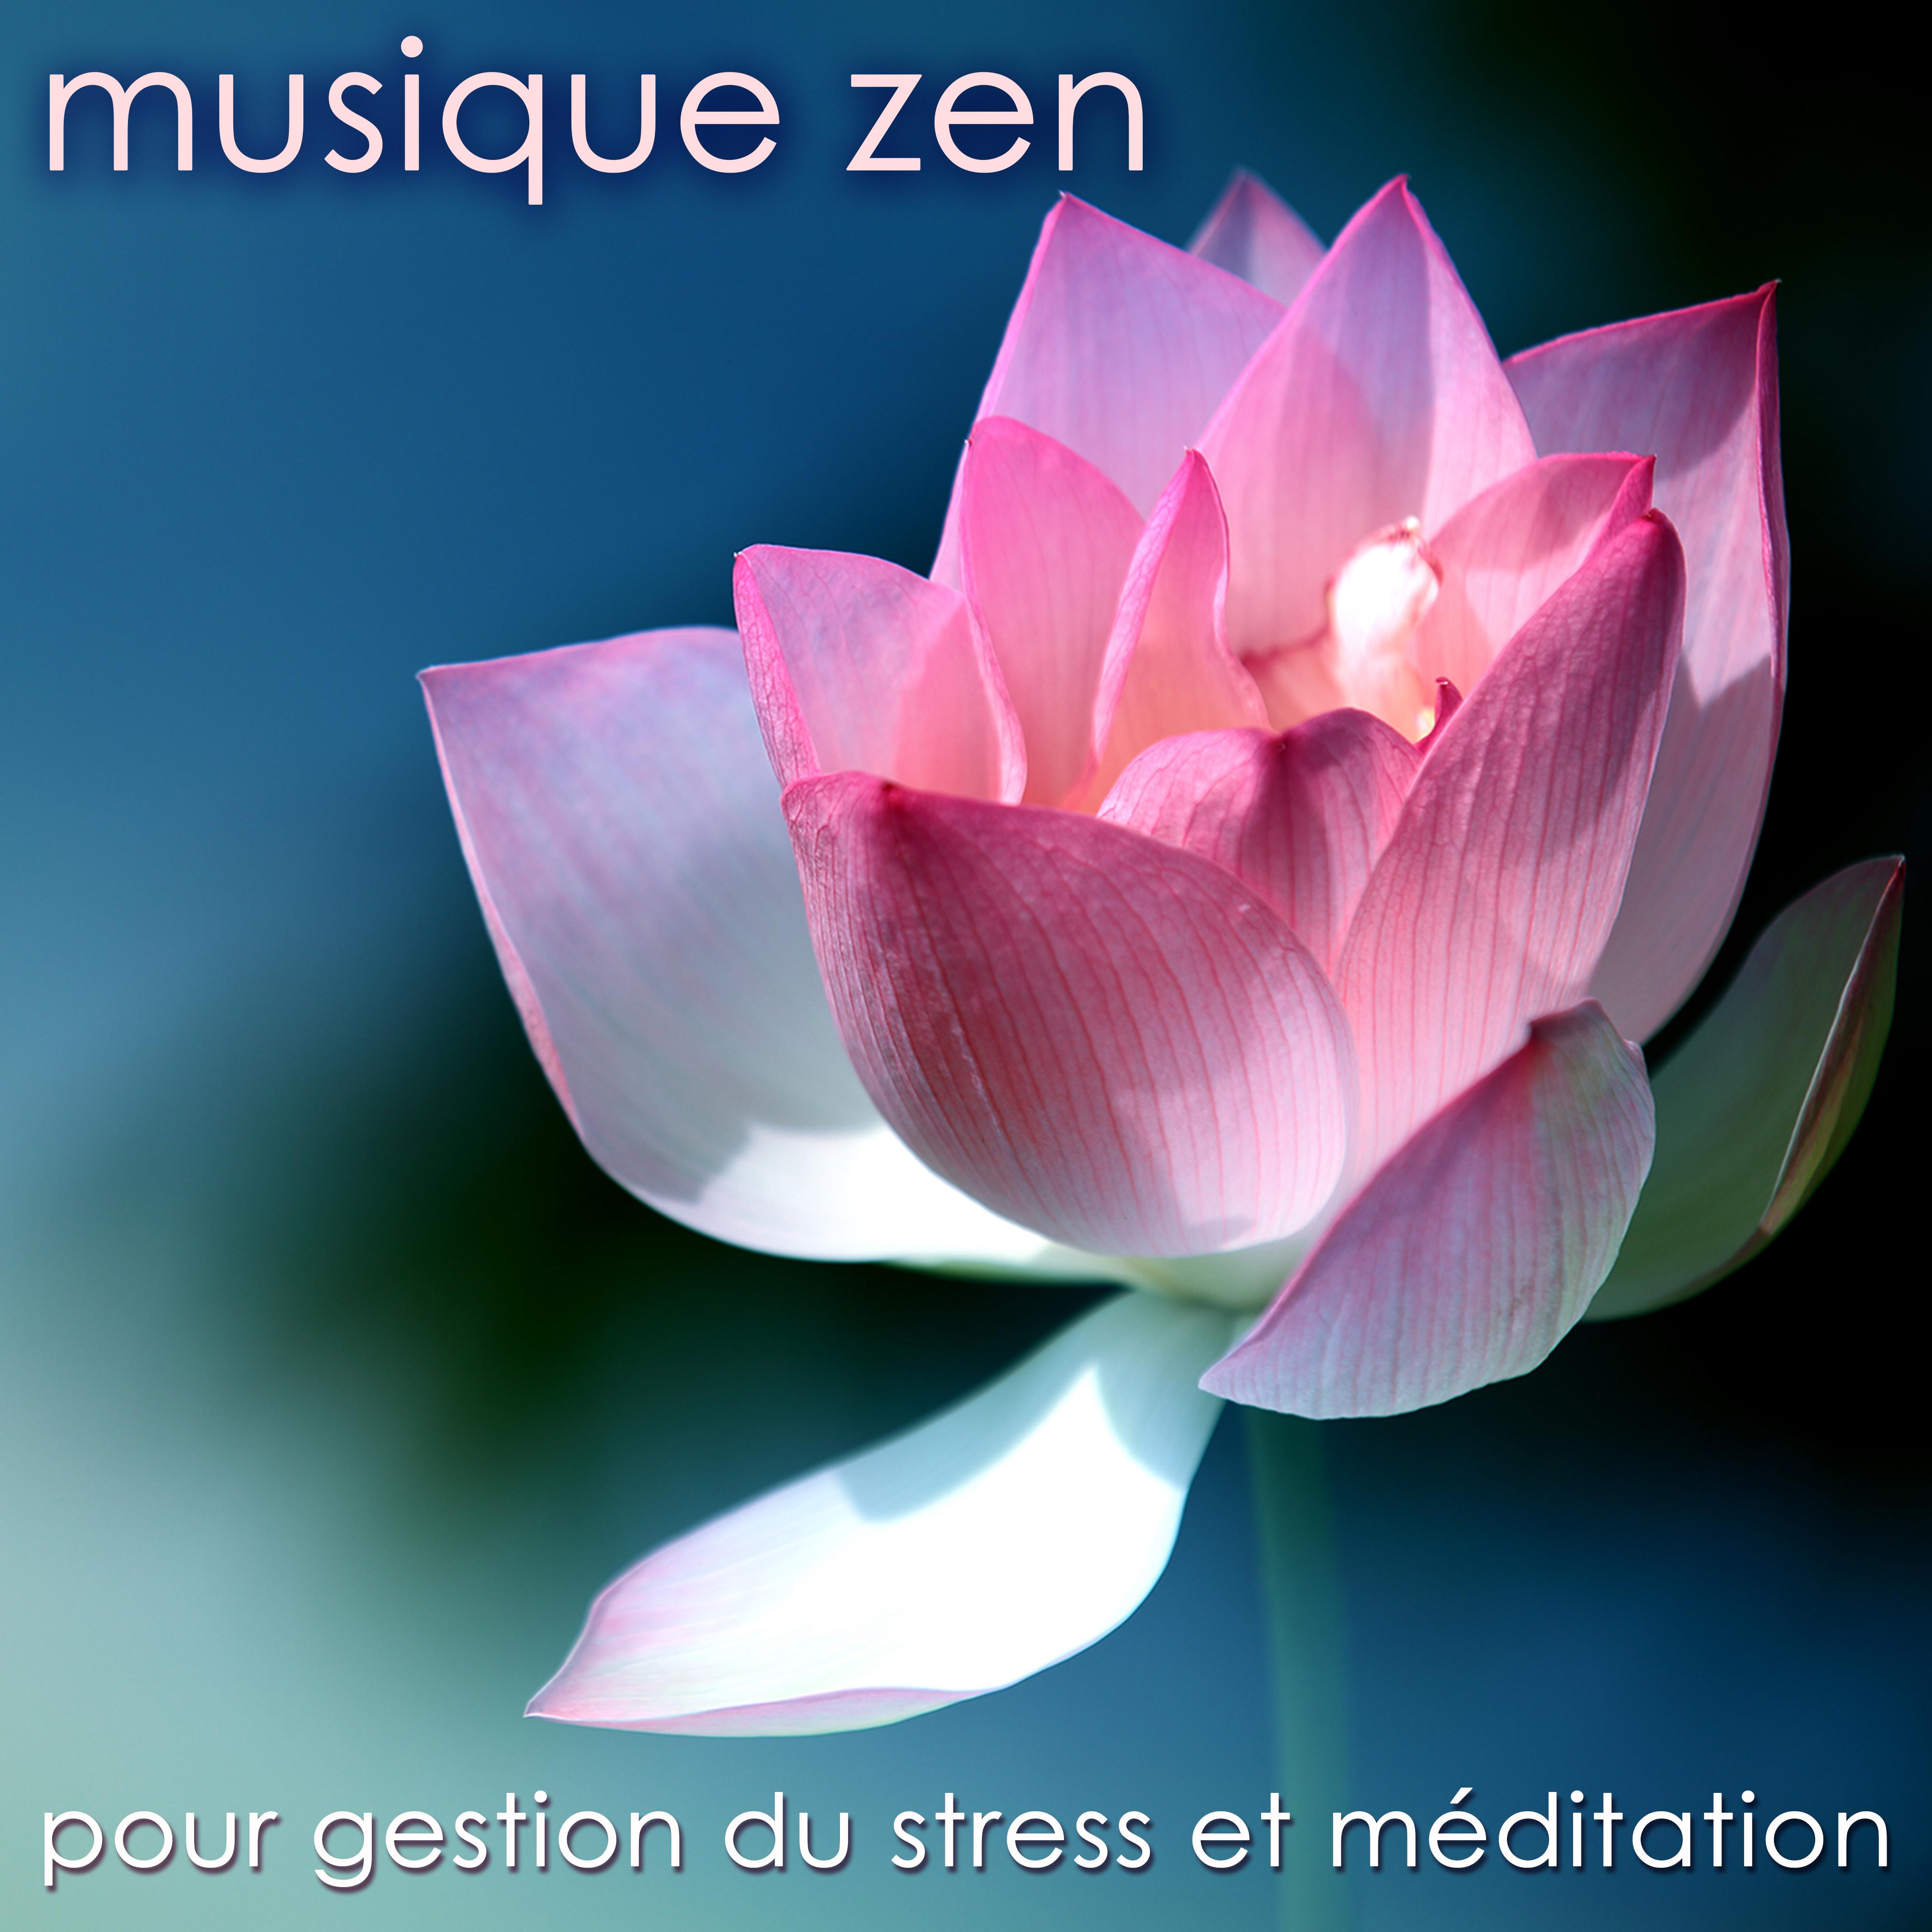 Musique zen pour gestion du stress et méditation – Musique douce pour détente et yoga